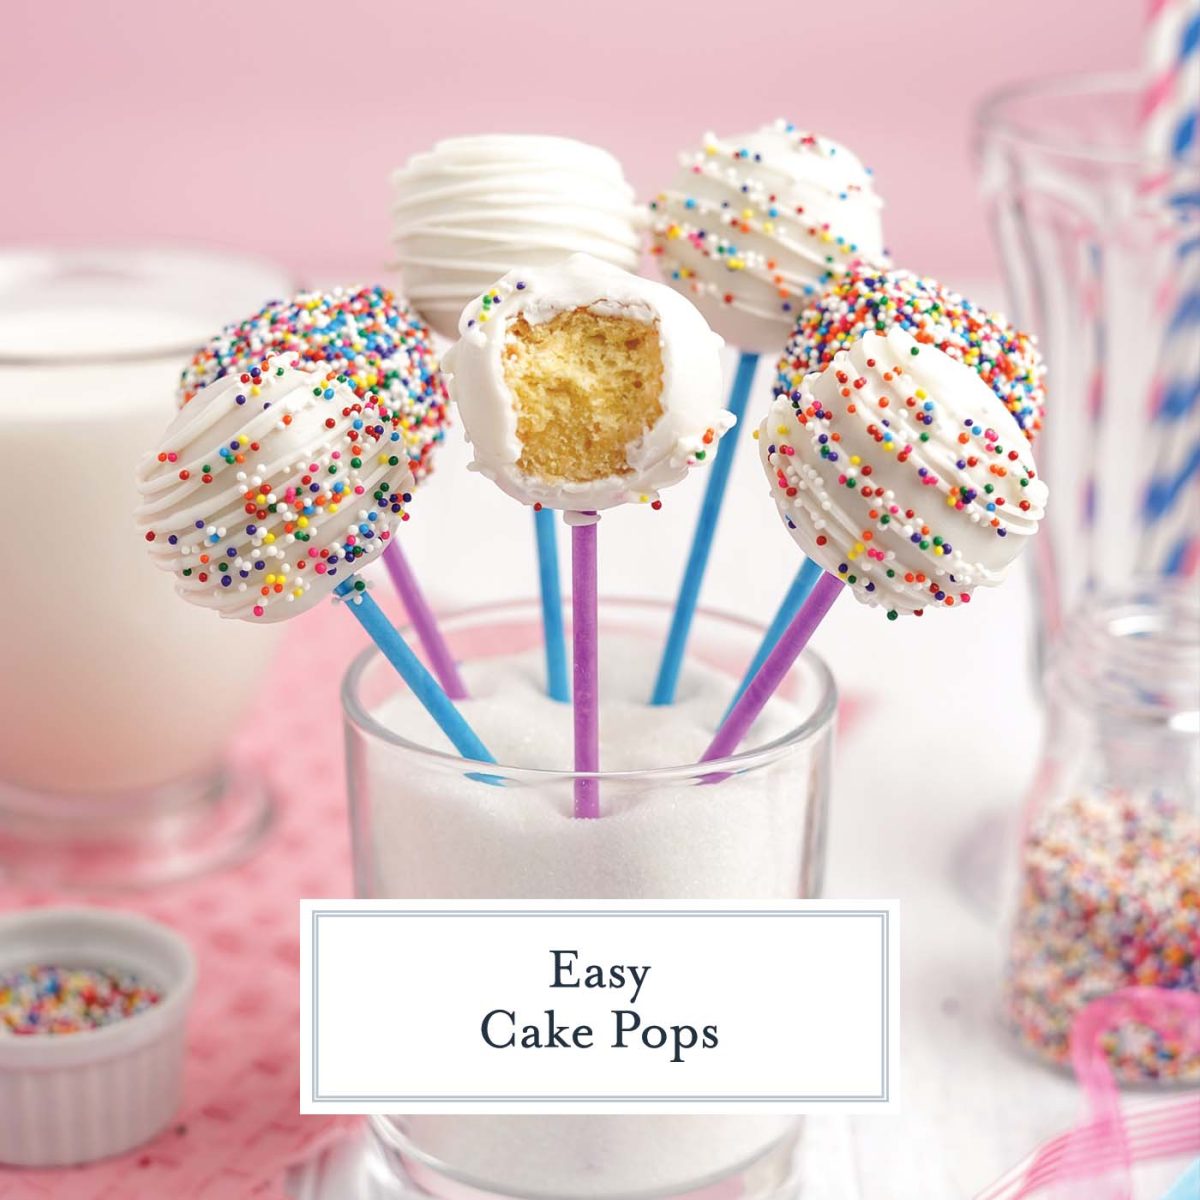 How to Make Cake Pops - Cake Pop Recipe